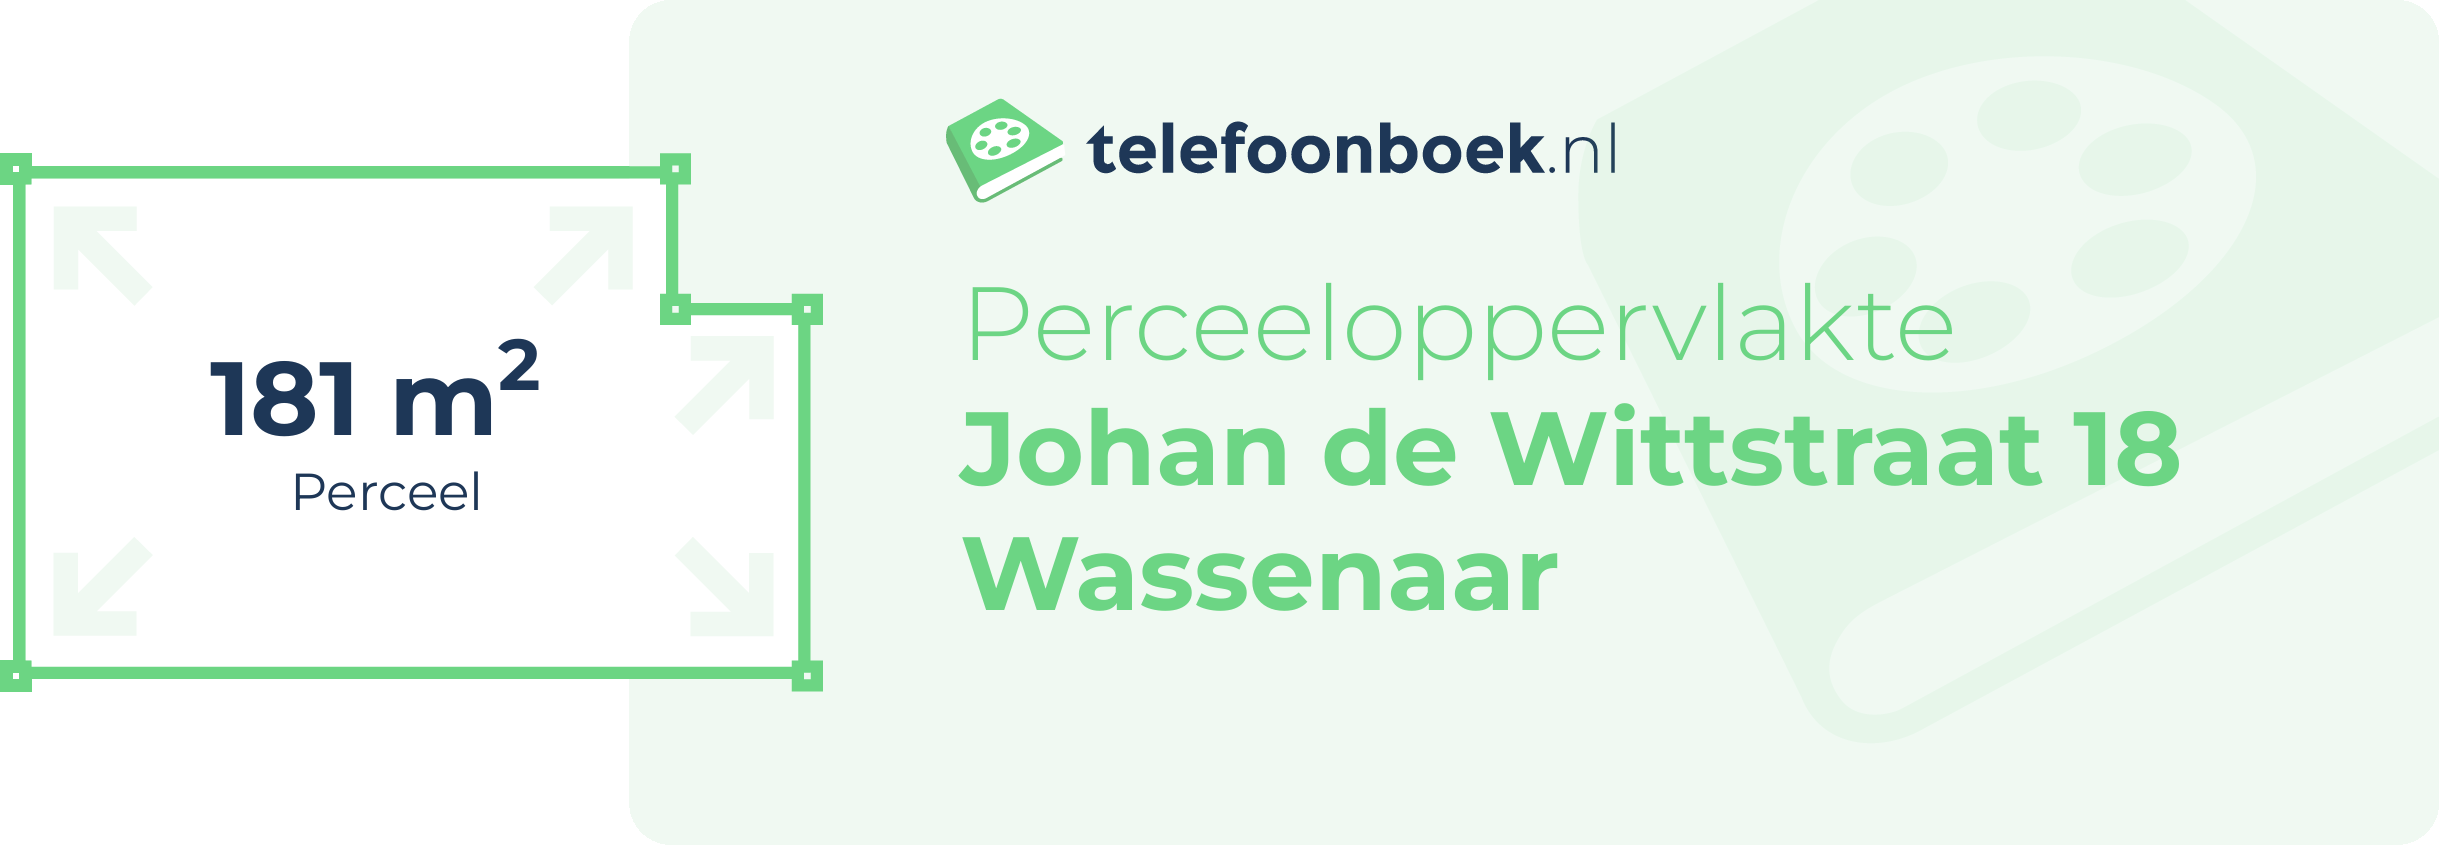 Perceeloppervlakte Johan De Wittstraat 18 Wassenaar